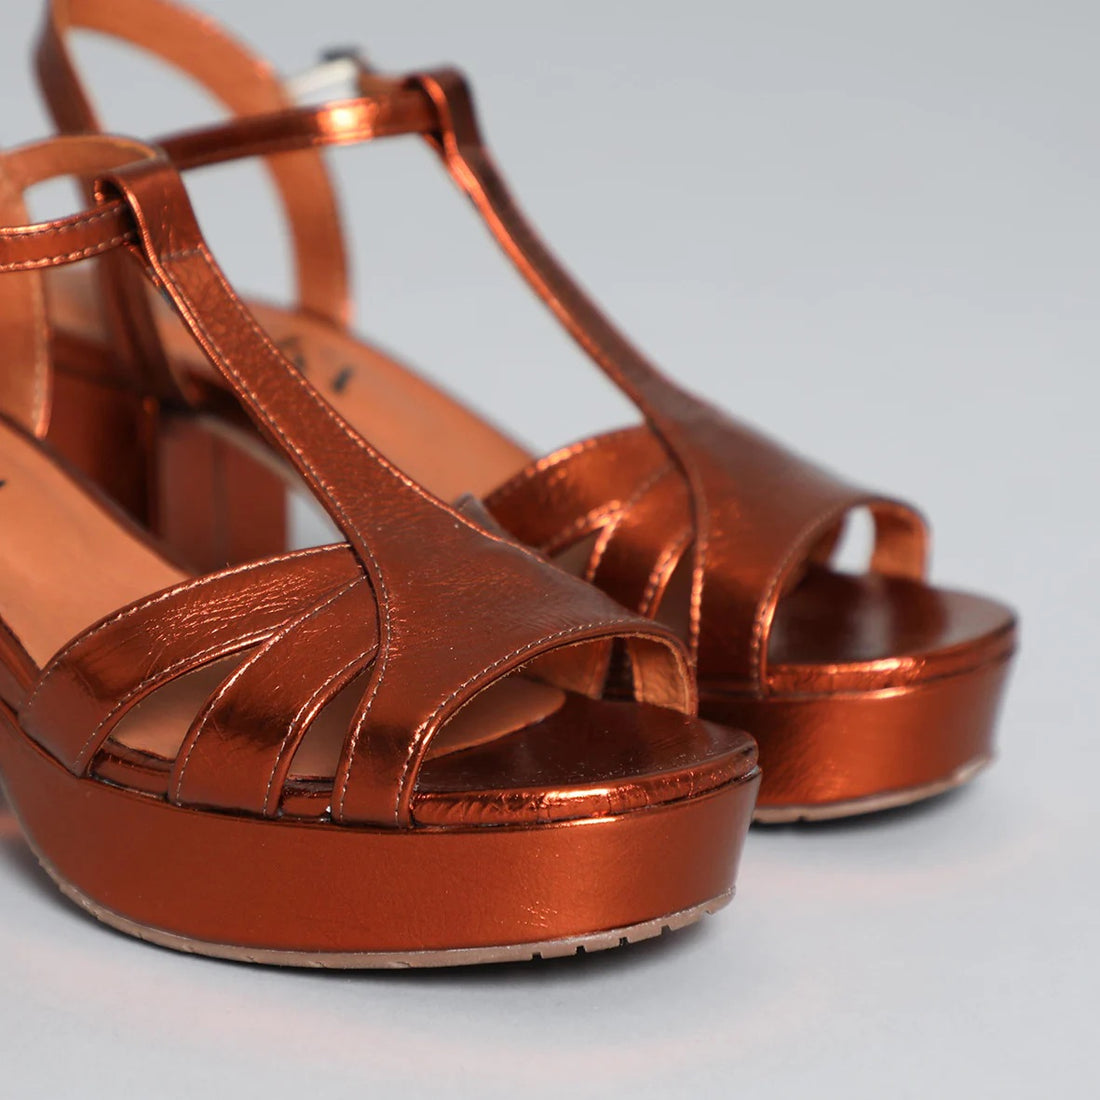 Esska Charlie Leather Block Heel Shoe in Metallic Copper mop